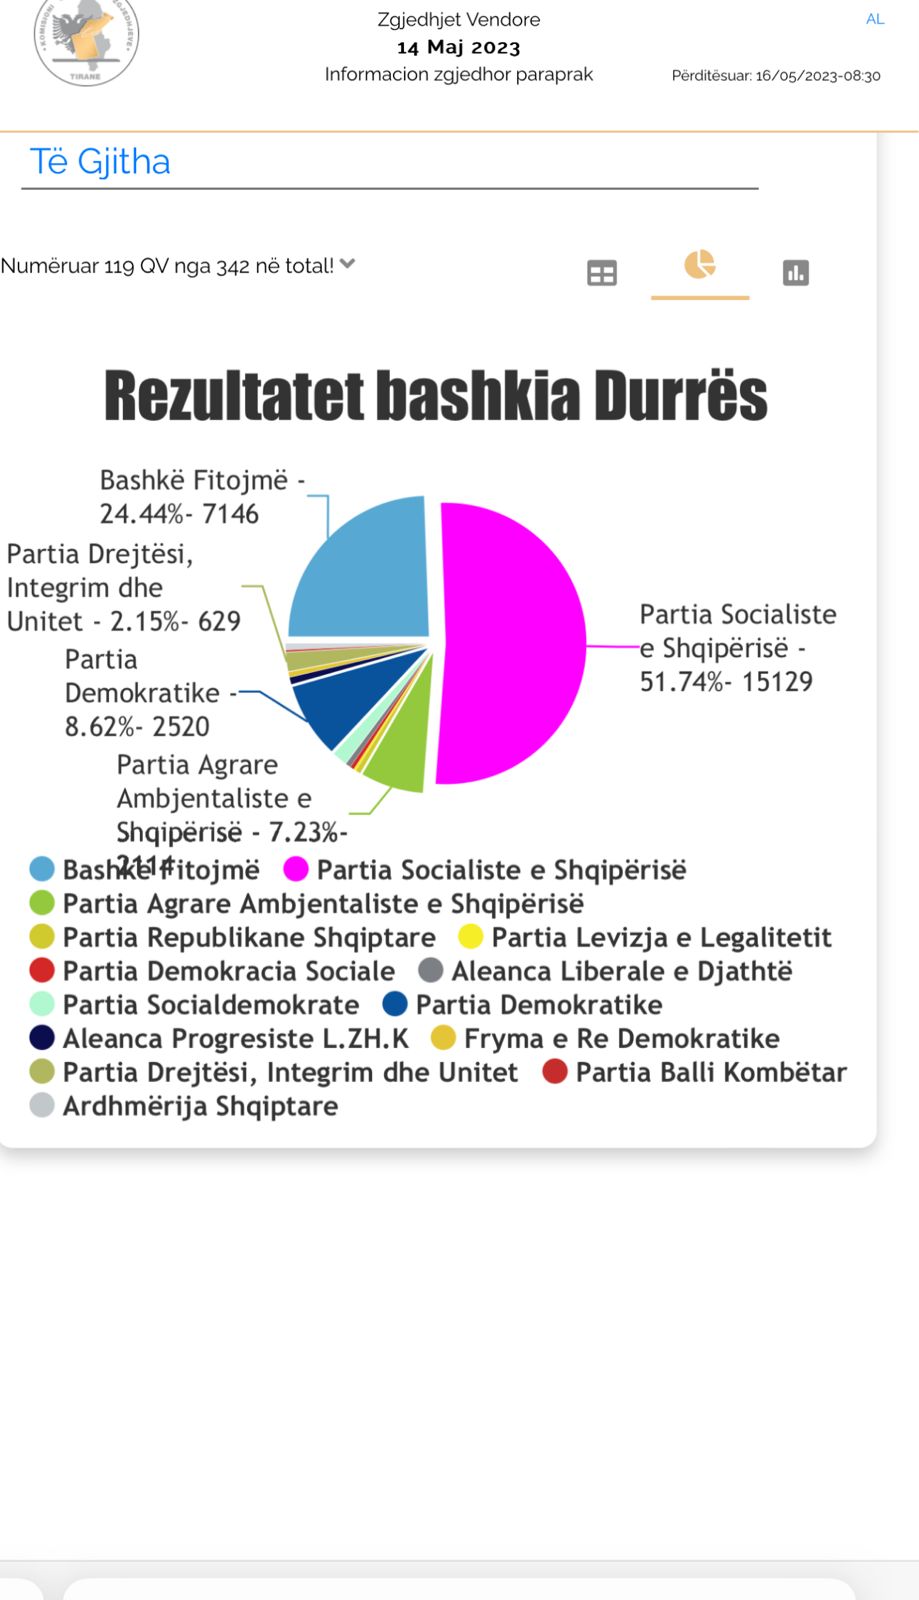 Vijon numërimi për Këshillin Bashkiak për Durrësin, PS kryeson me 29 mandate, si renditen partitë e tjera